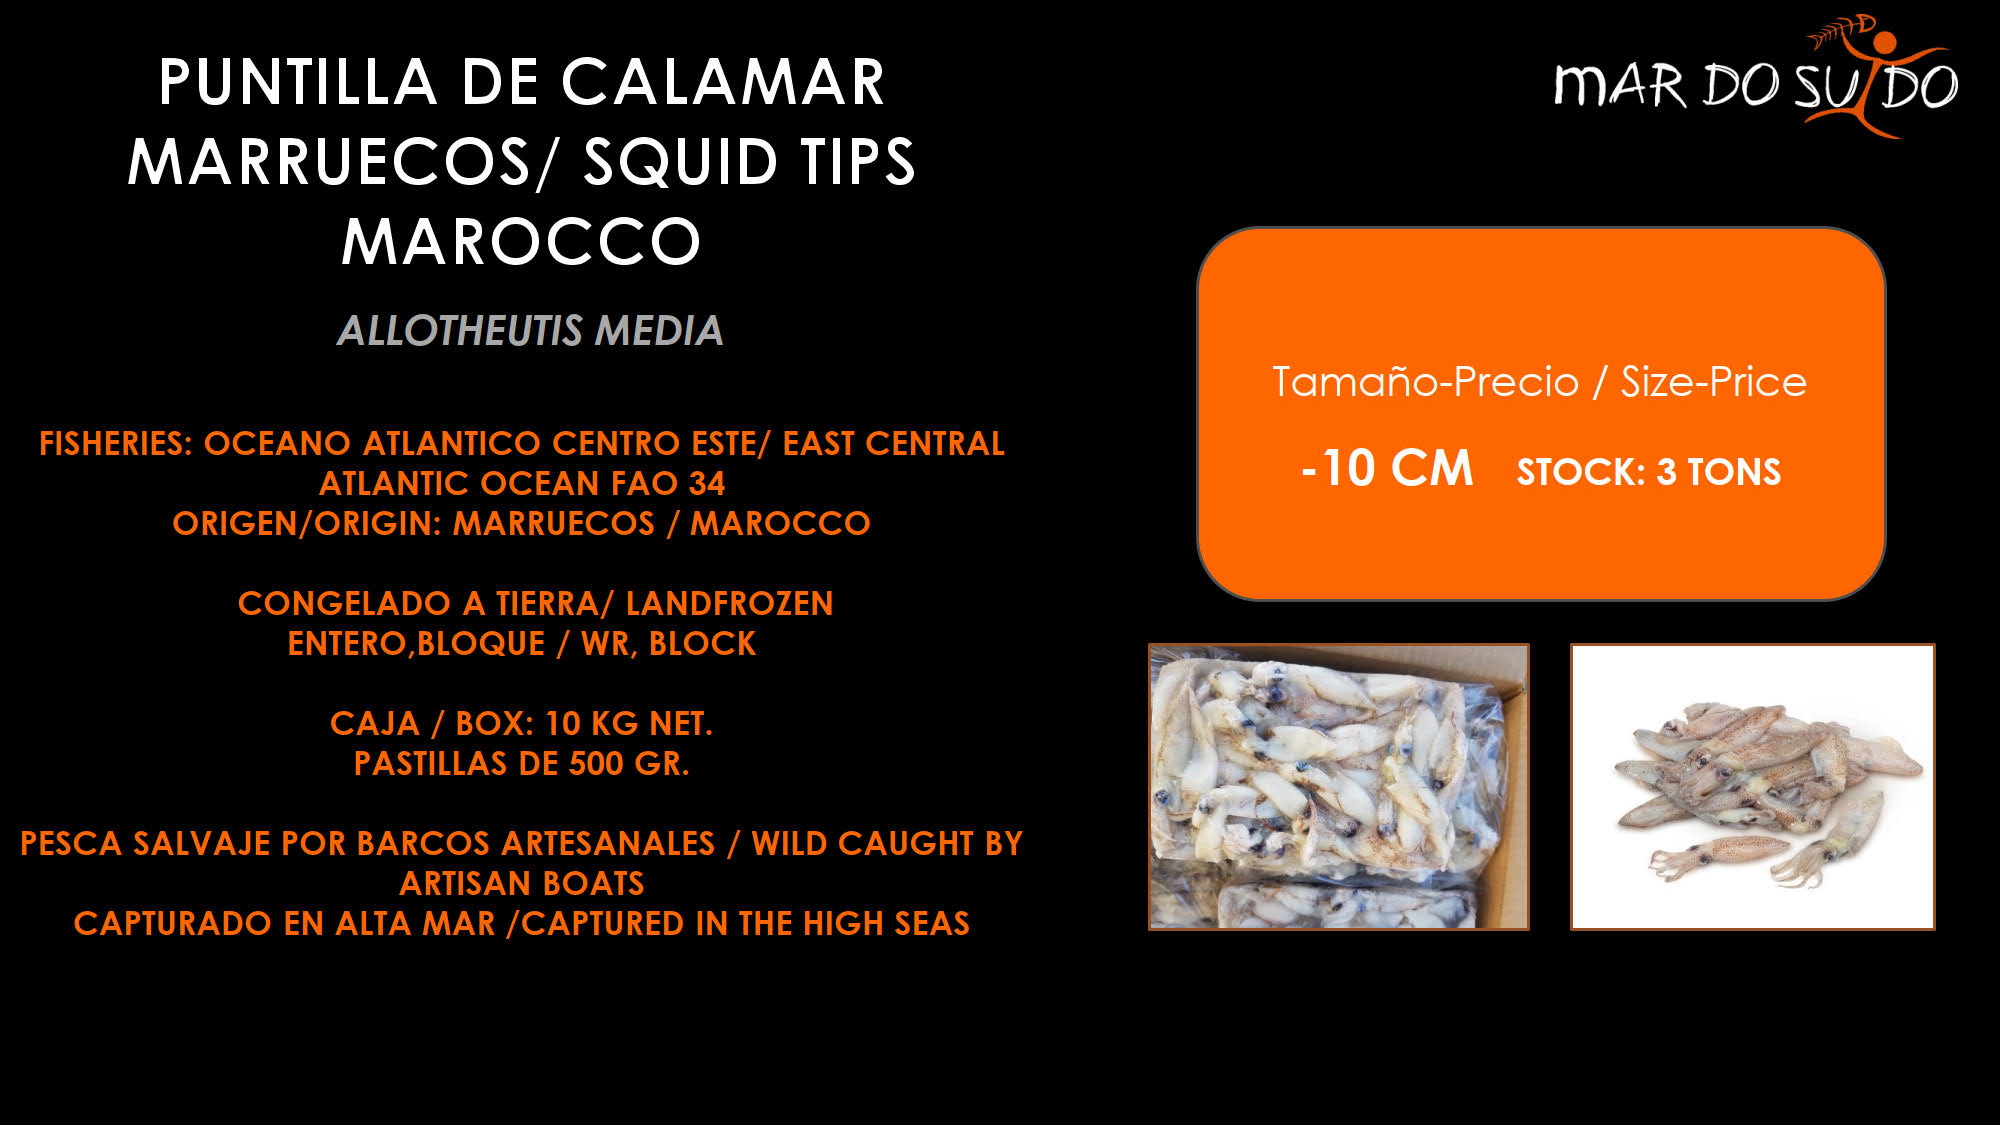 Oferta Destacada de Puntilla de calamar Marruecos - Squid Tips Marocco Special Offer